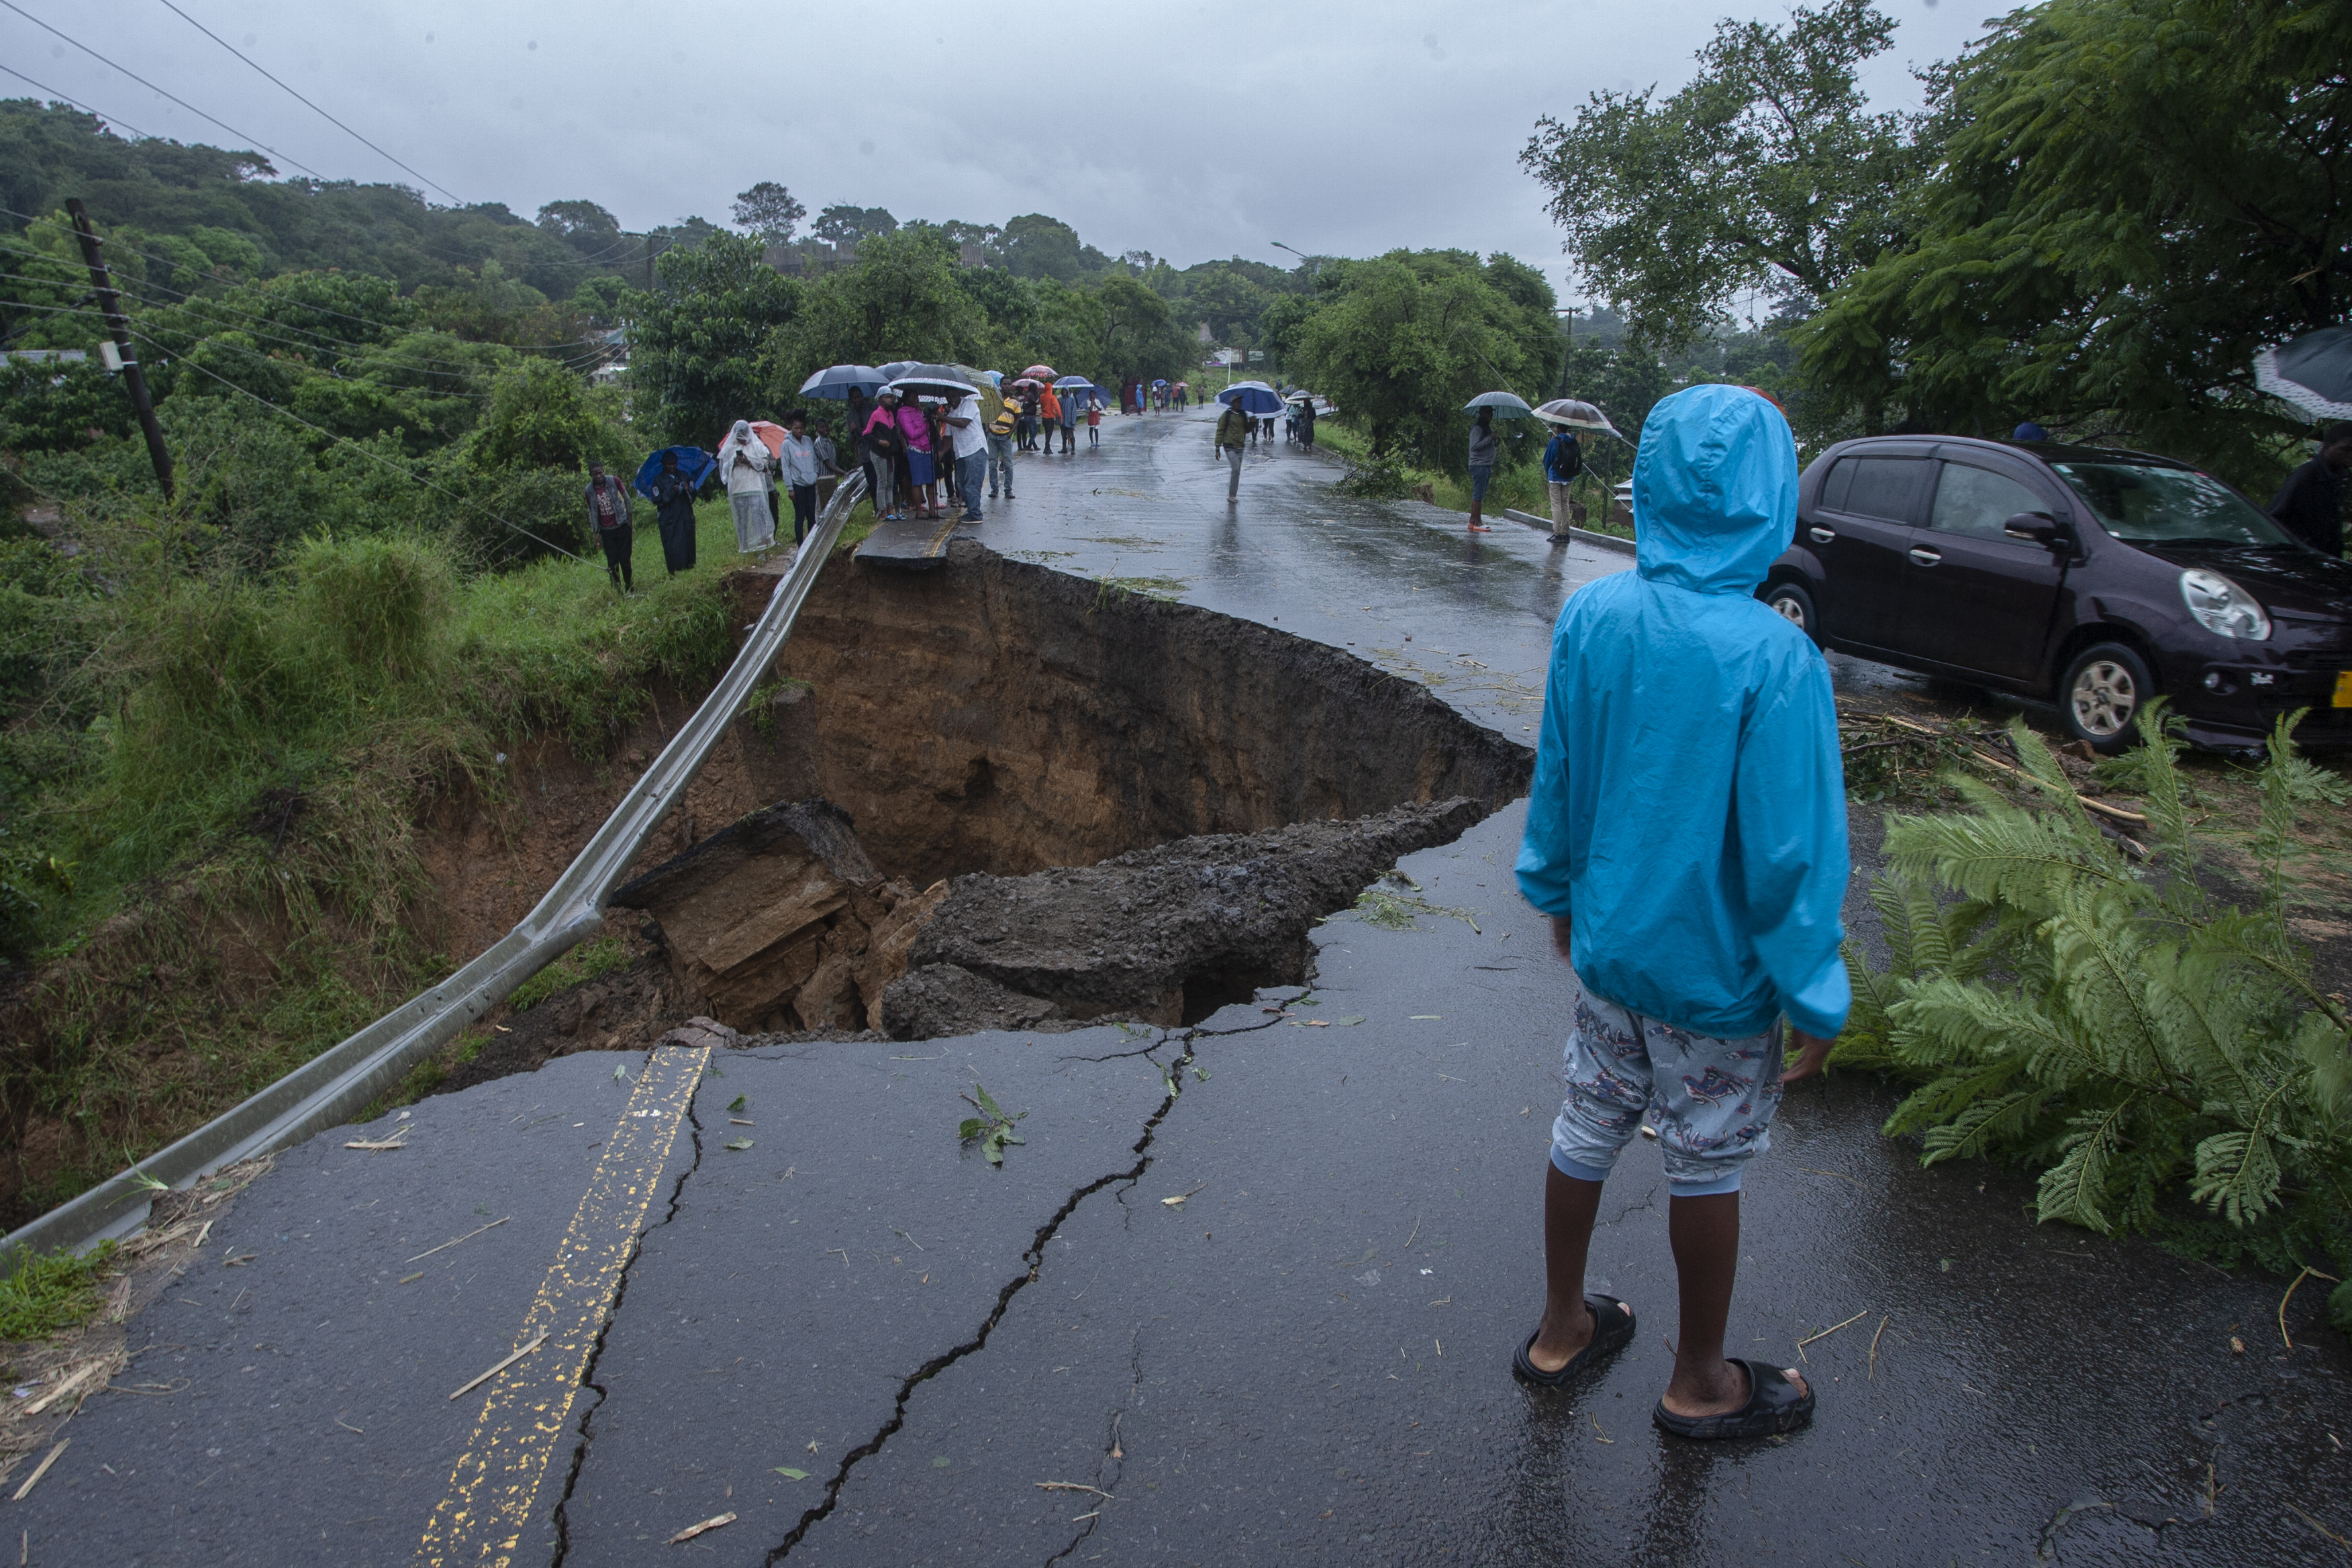 Una vista general de una carretera colapsada causada por las inundaciones debido a las fuertes lluvias que siguieron al ciclón Freddy en Blantyre, Malawi, el 13 de marzo de 2013. (Foto de Amos Gumulira / AFP)
